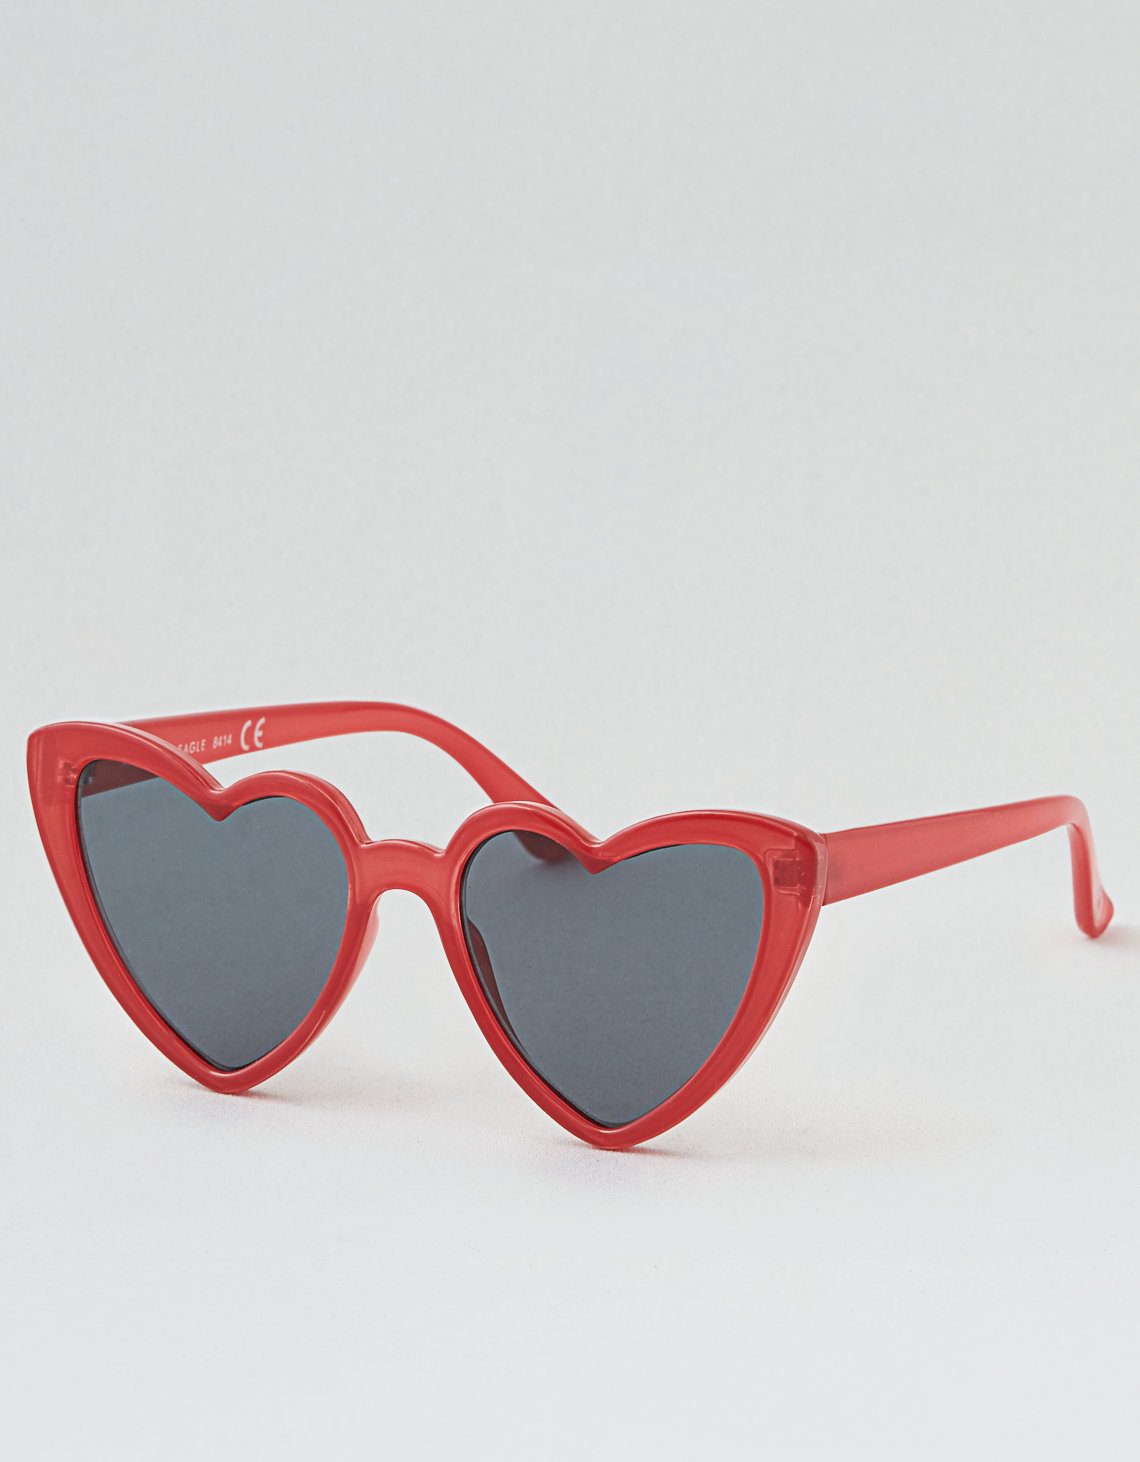 American Eagle heart-shaped sunglasses